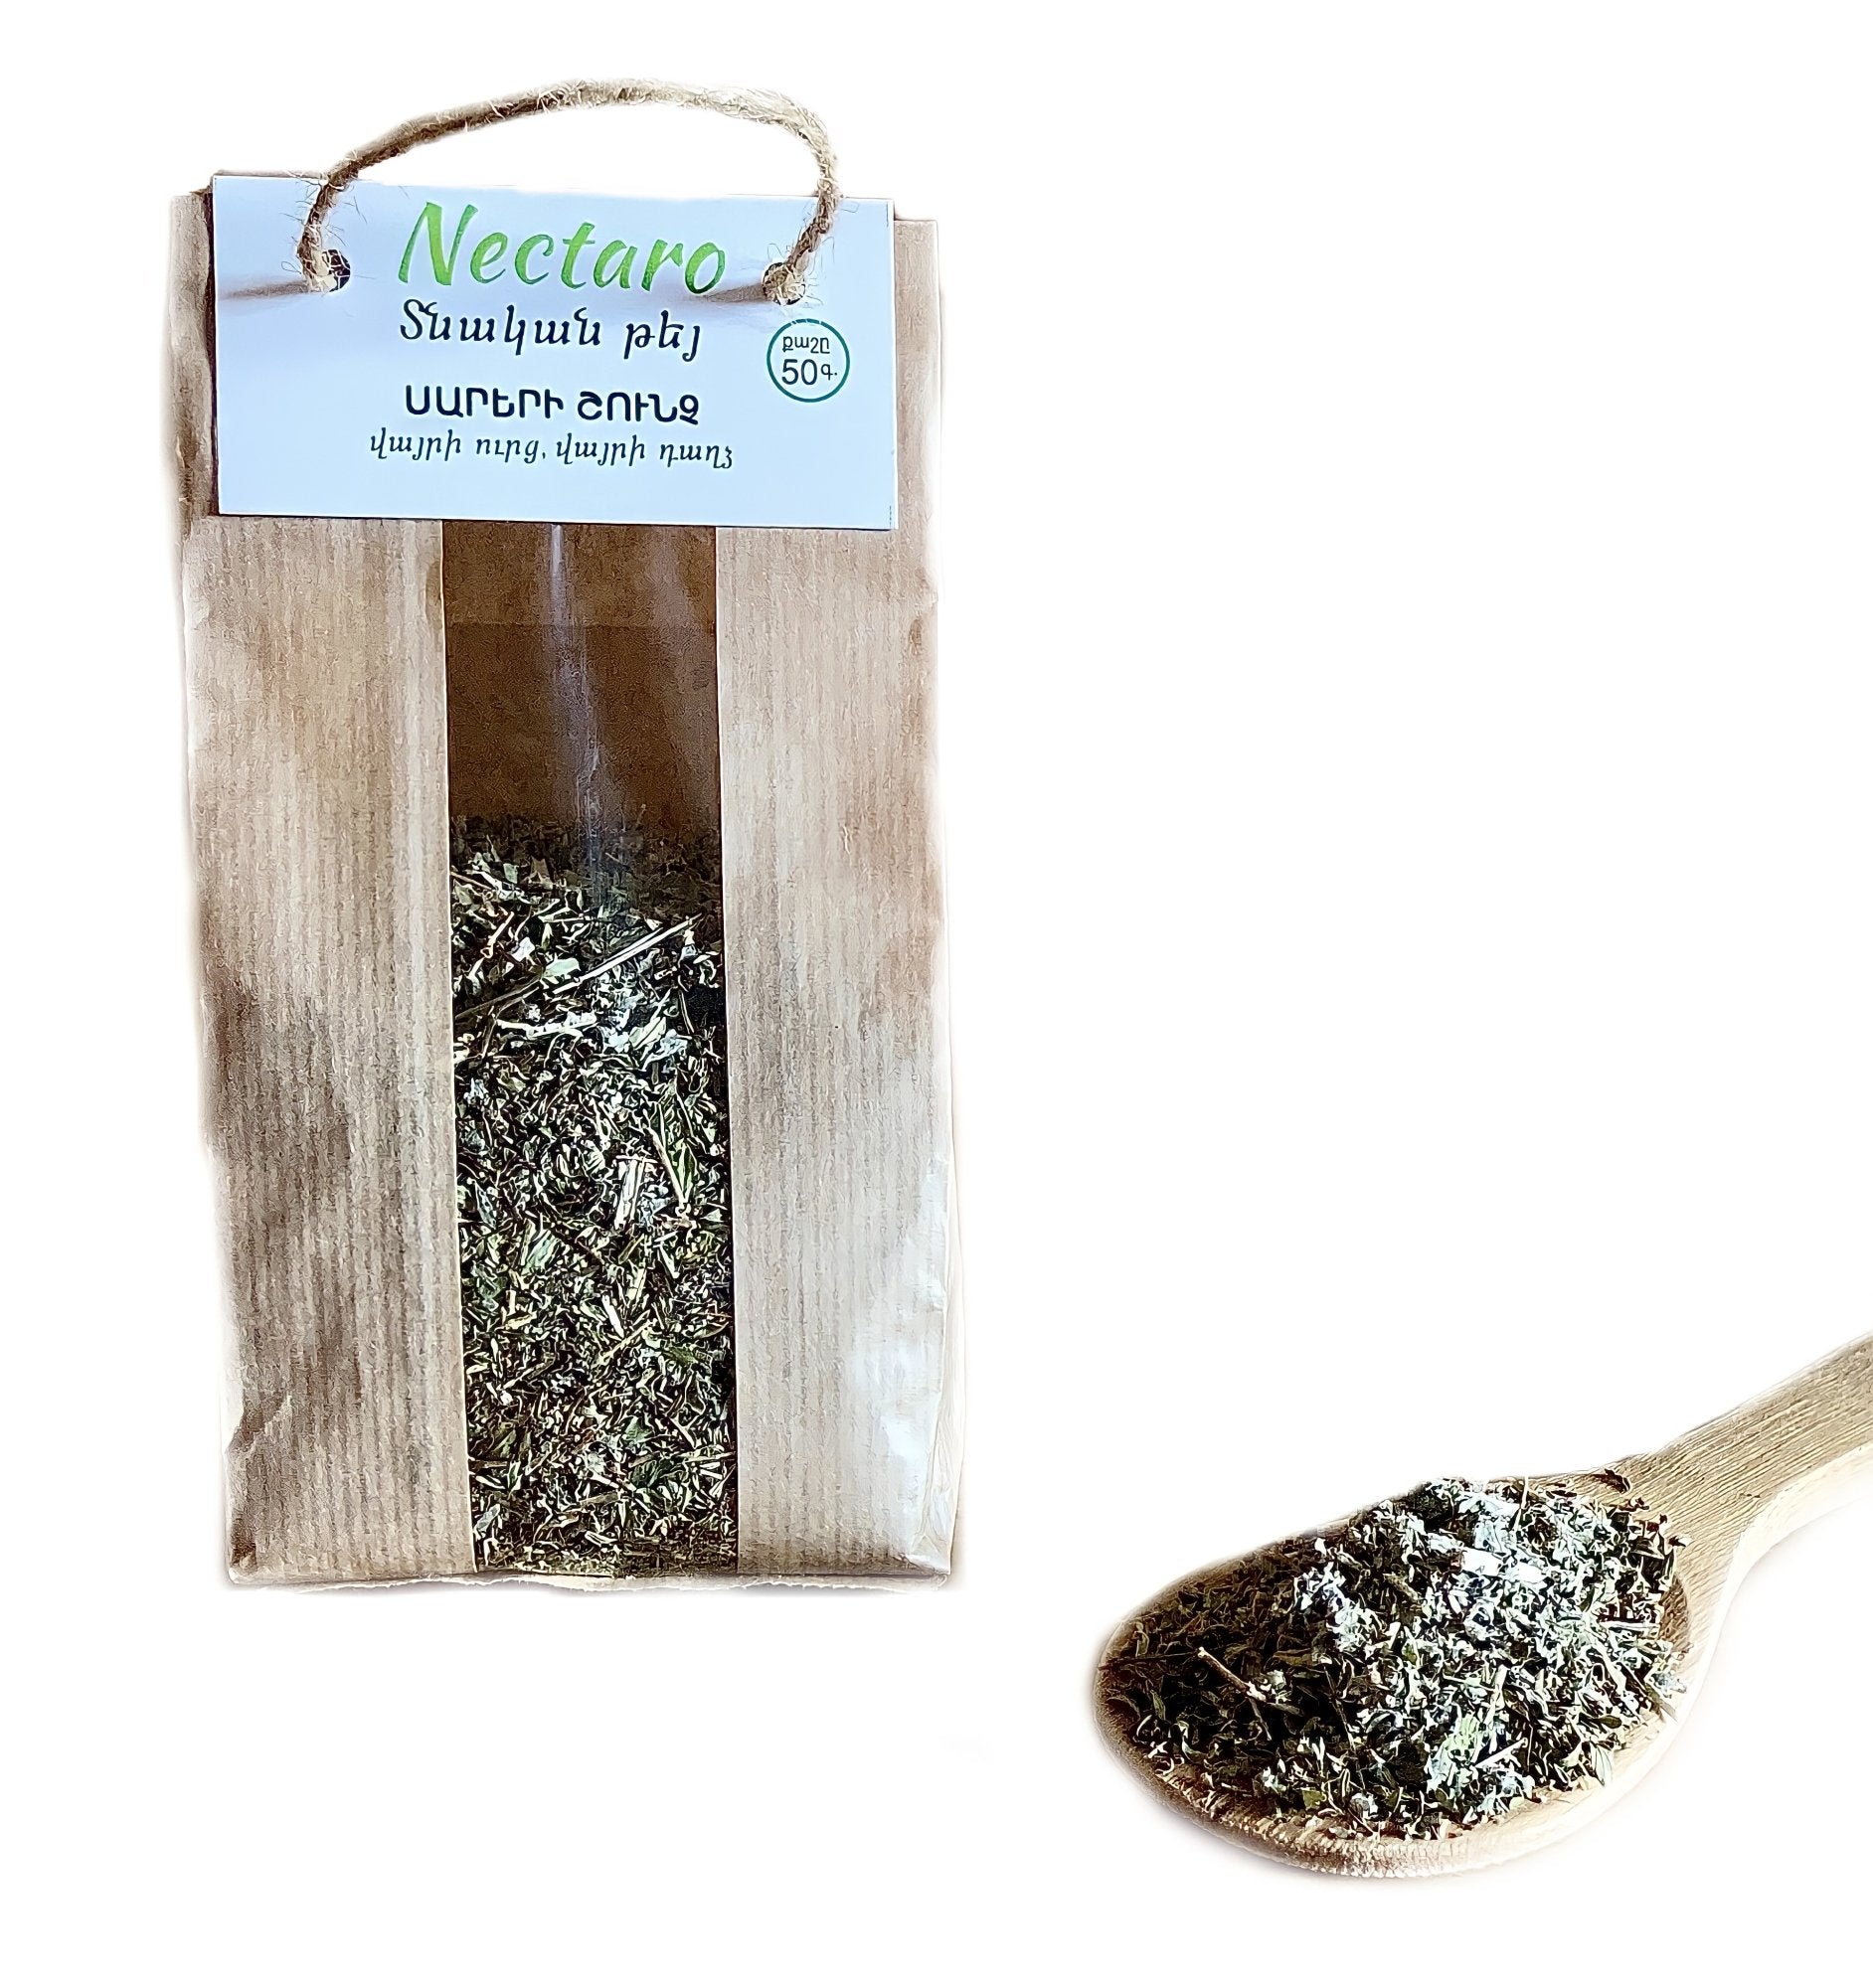 Nectaro Wild Mint and Wild Thyme Herbal Tea - Breath of Mountains - 50g